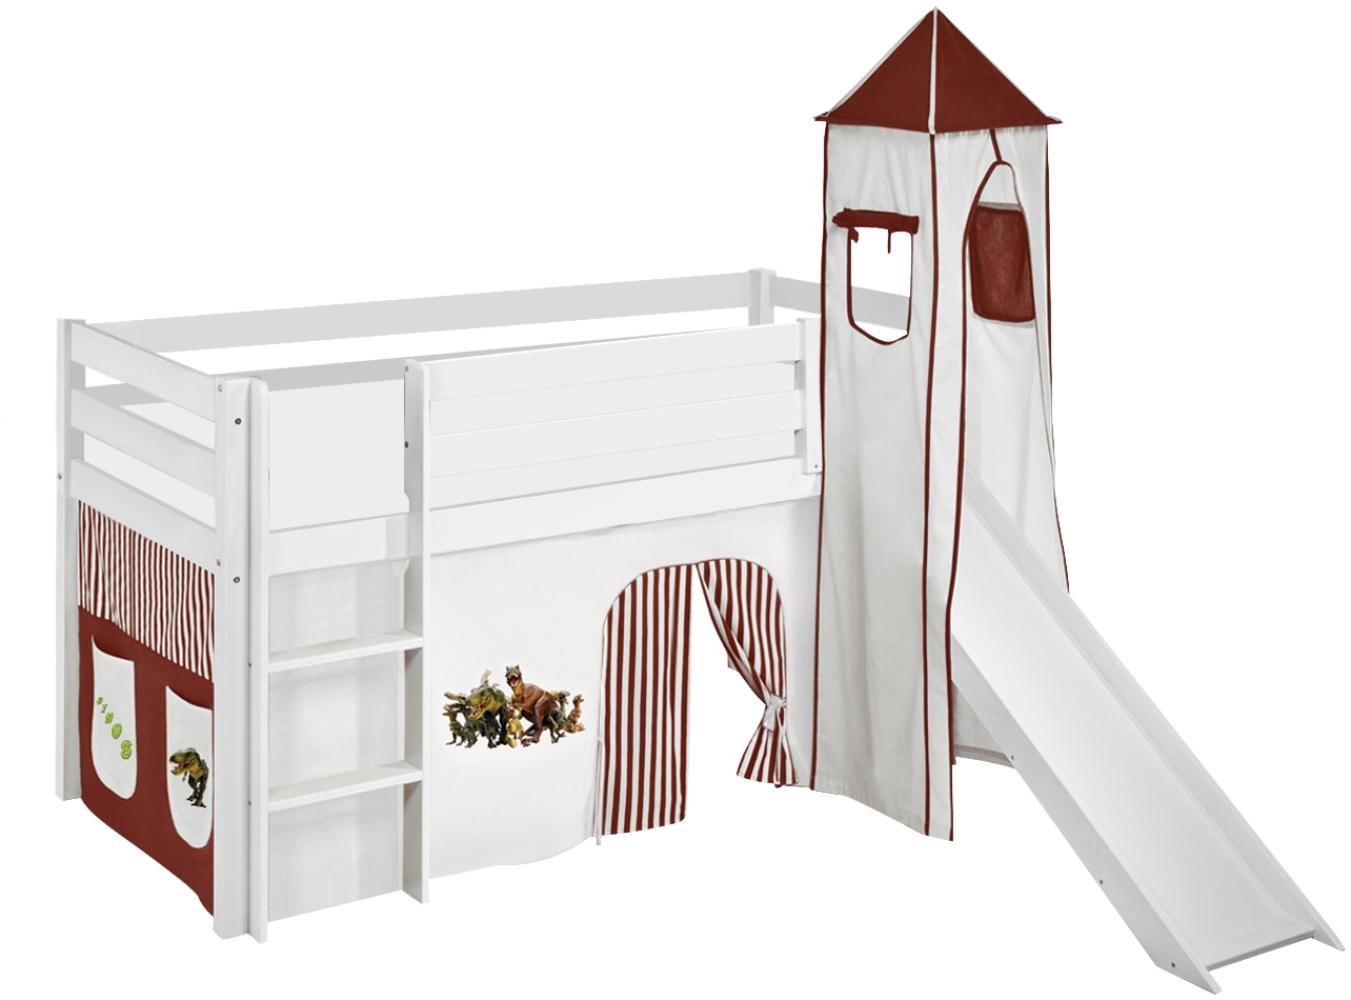 Lilokids 'Jelle' Spielbett 90 x 200 cm, Dinos Braun Beige, Kiefer massiv, mit Turm, Rutsche und Vorhang Bild 1